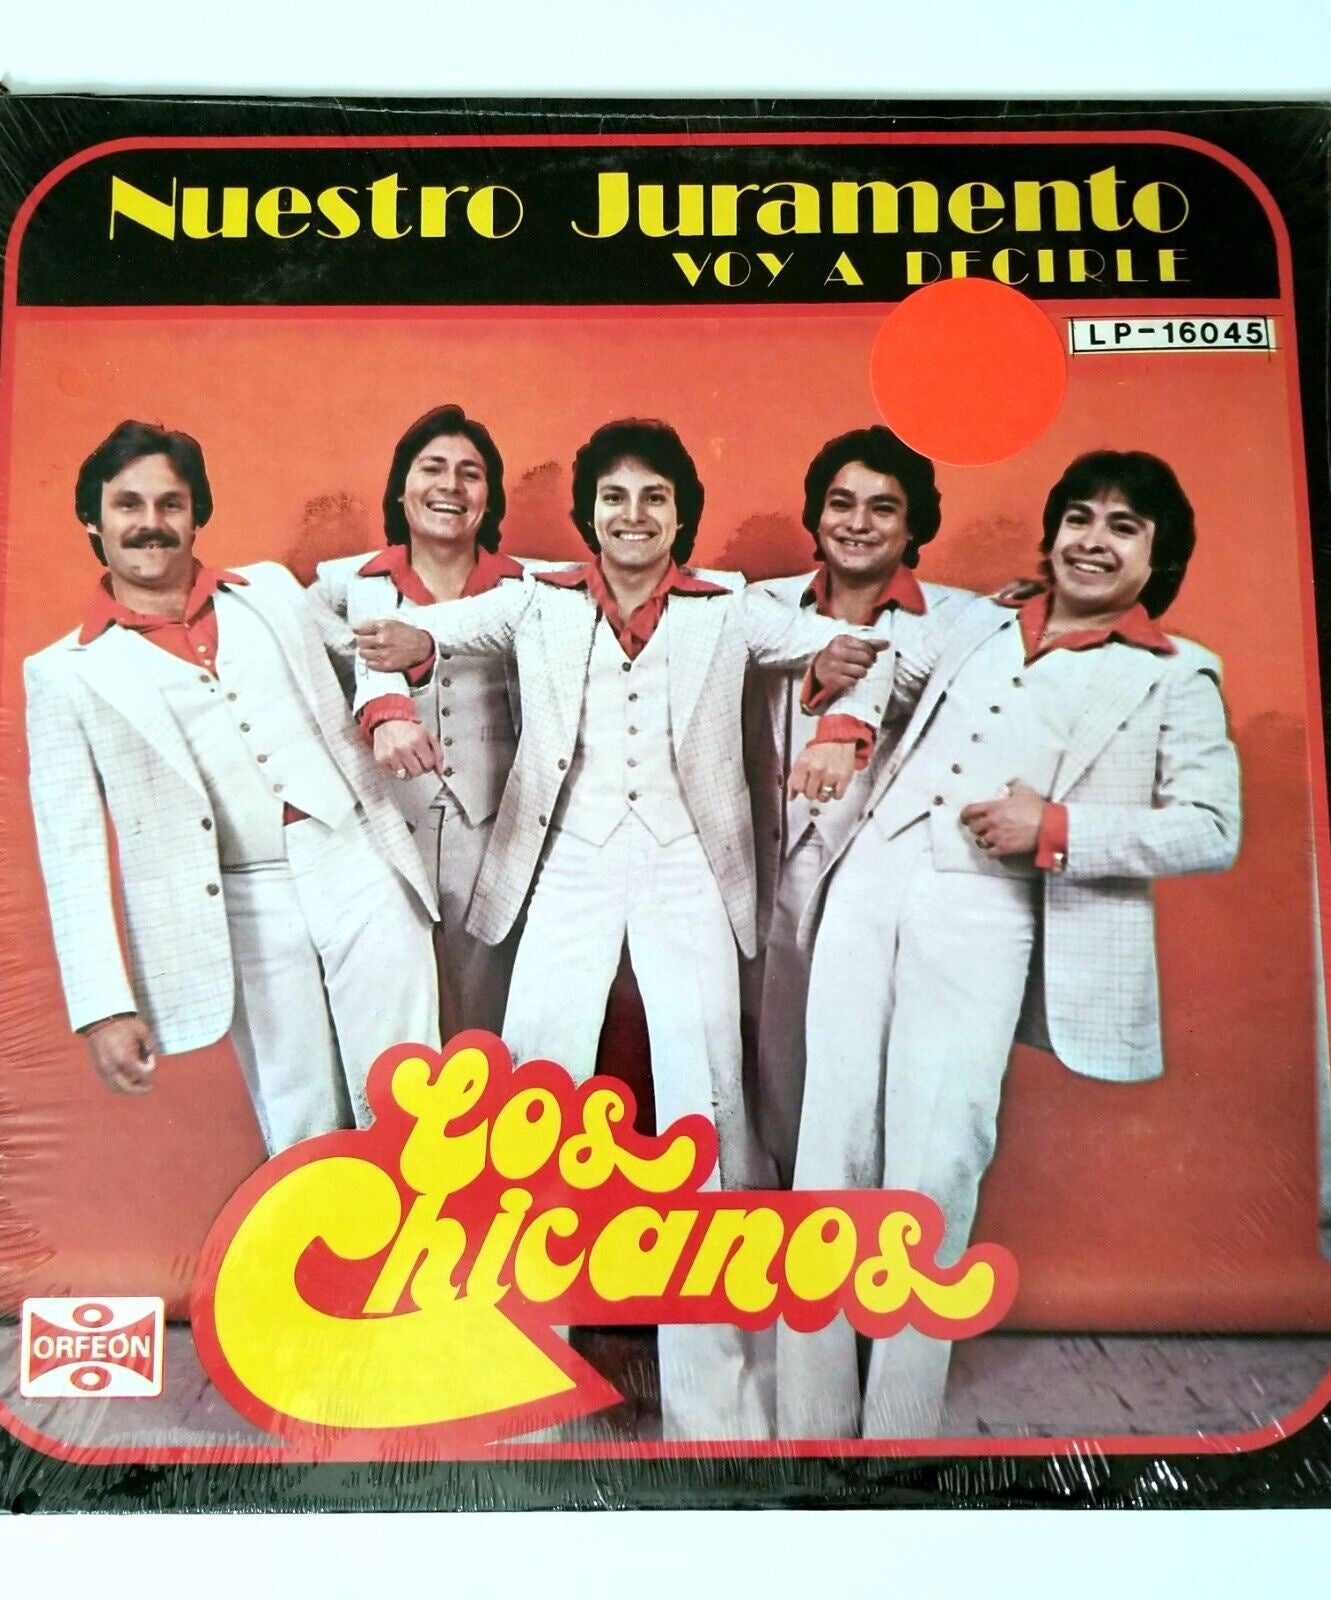 Los Chicanos – Nuestro Juramento Voy A Decircle - Mint- LP Record 1980 Orfeon USA Vinyl - Latin / Tejano